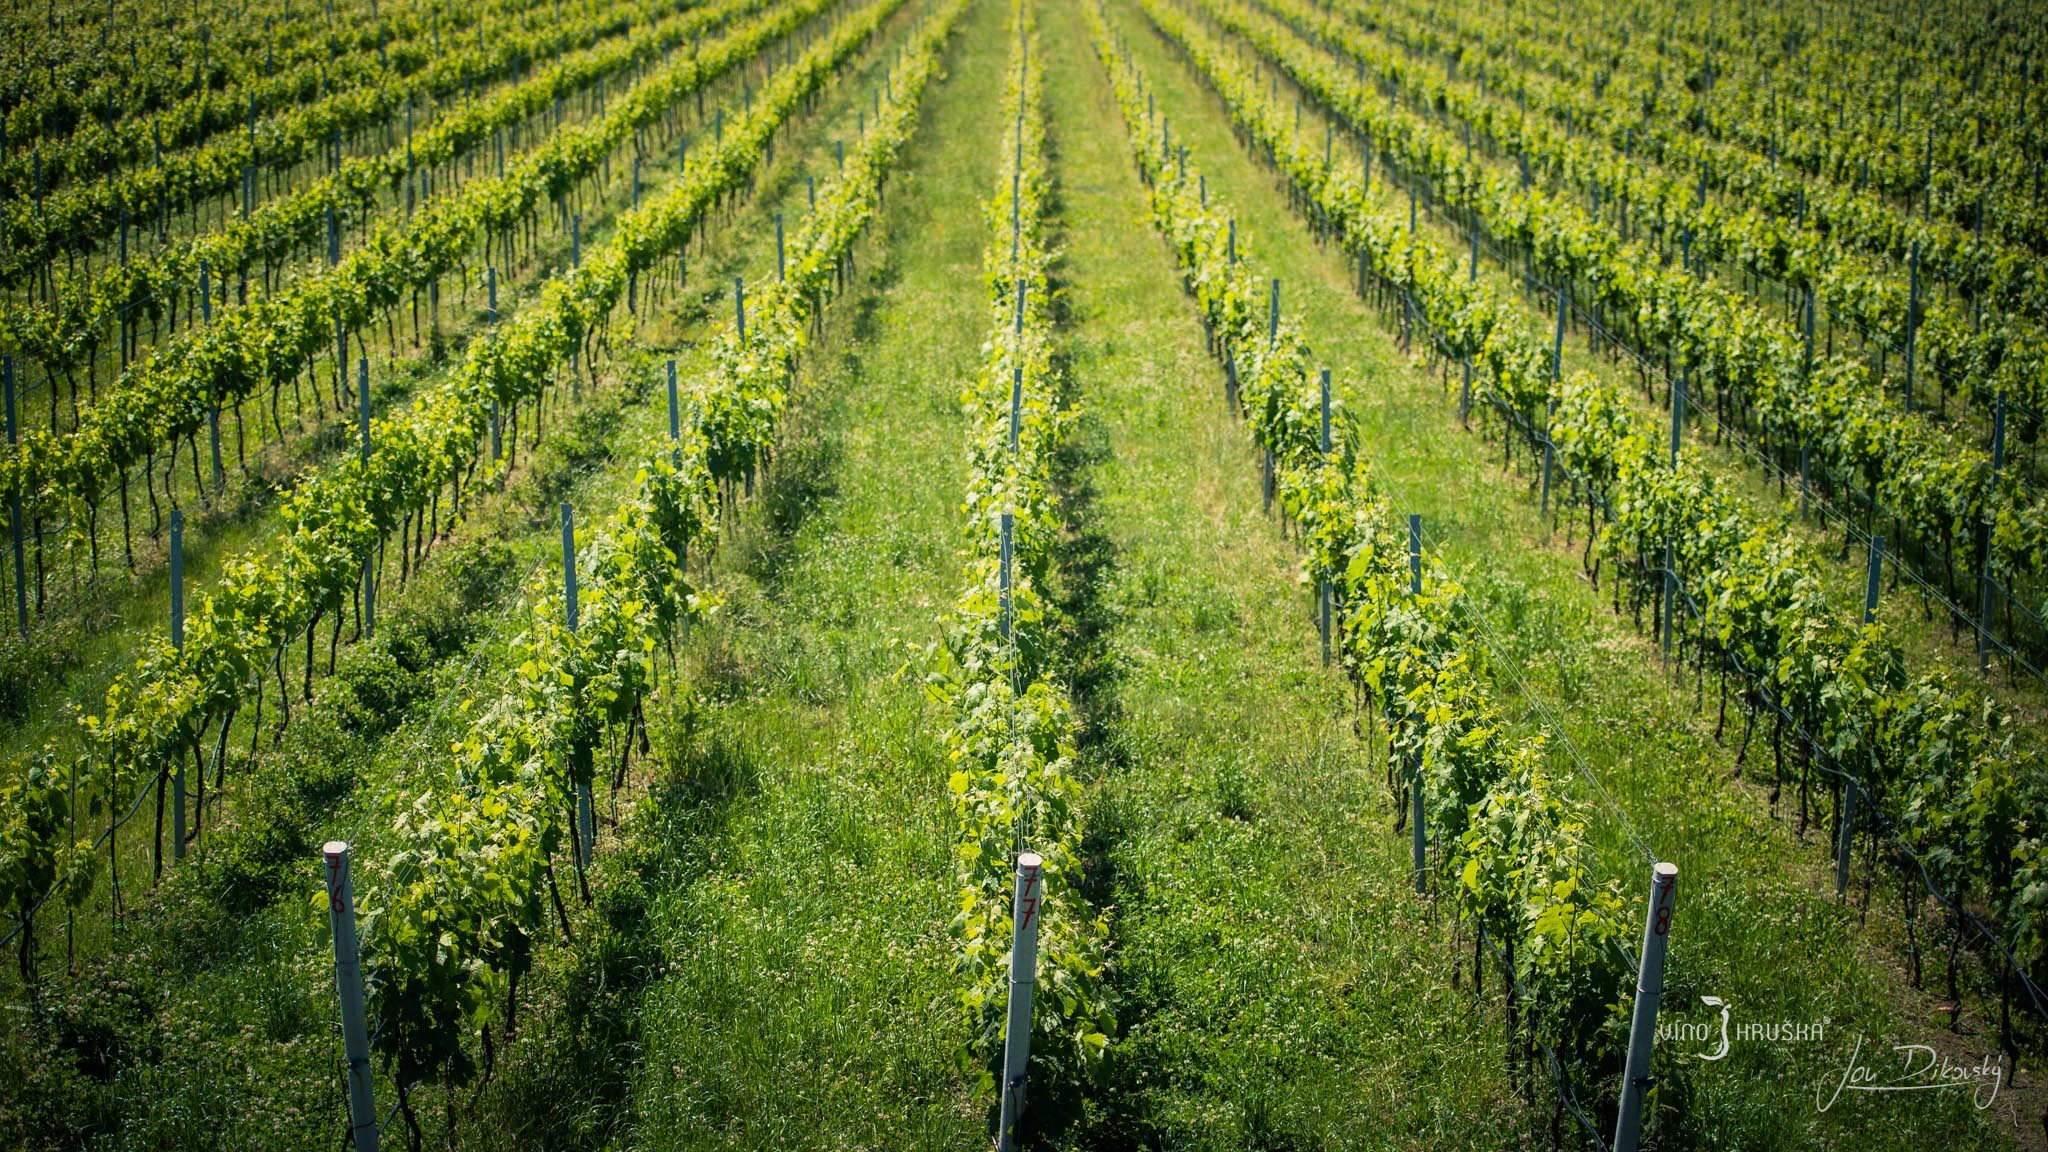 Poloha vinohradu a složení půdy se projevuje v chuti vína.